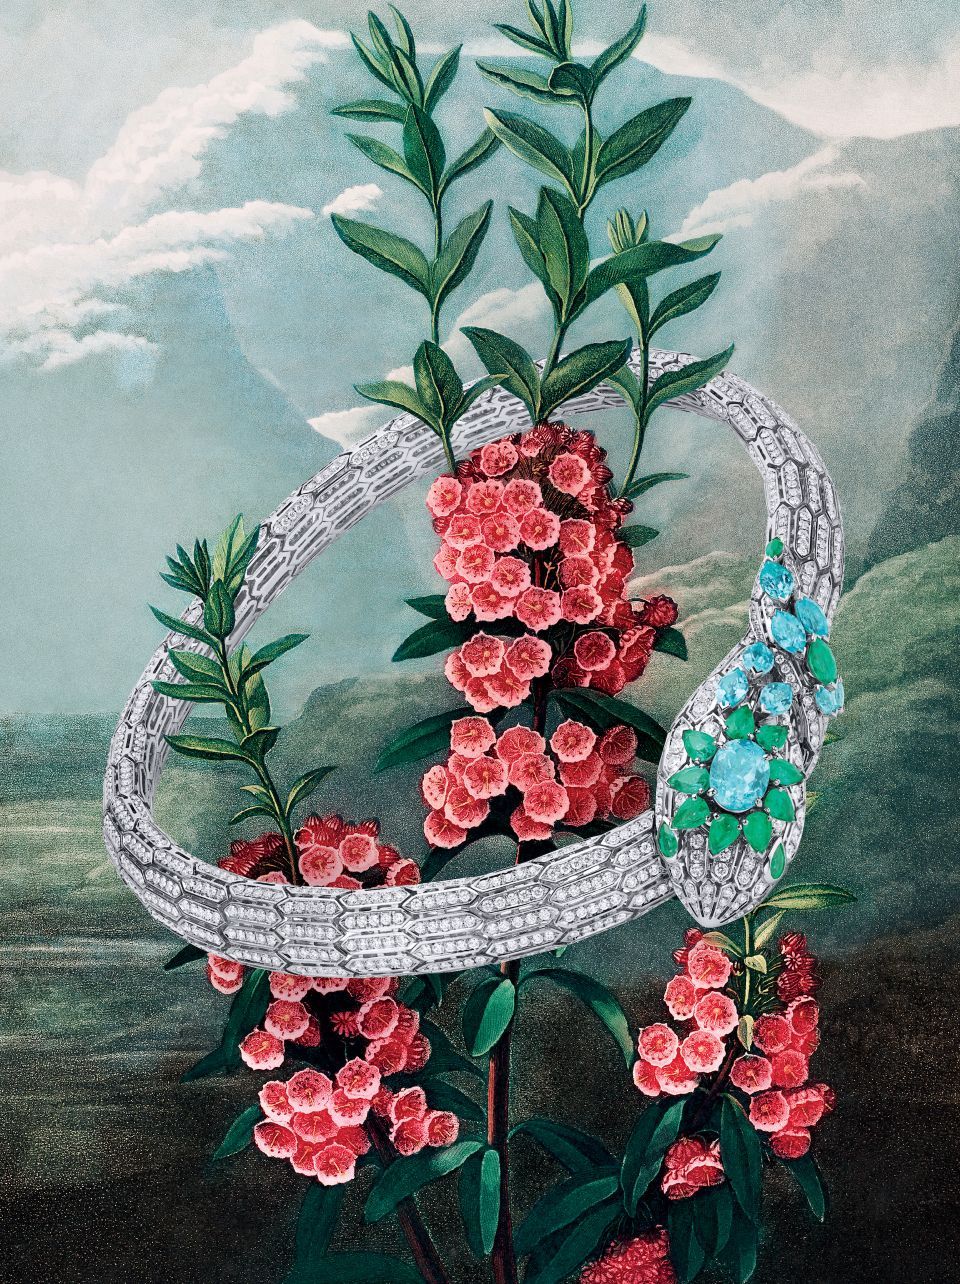 Bulgari's New High Jewellery Eden: the Garden of Wonders Watches